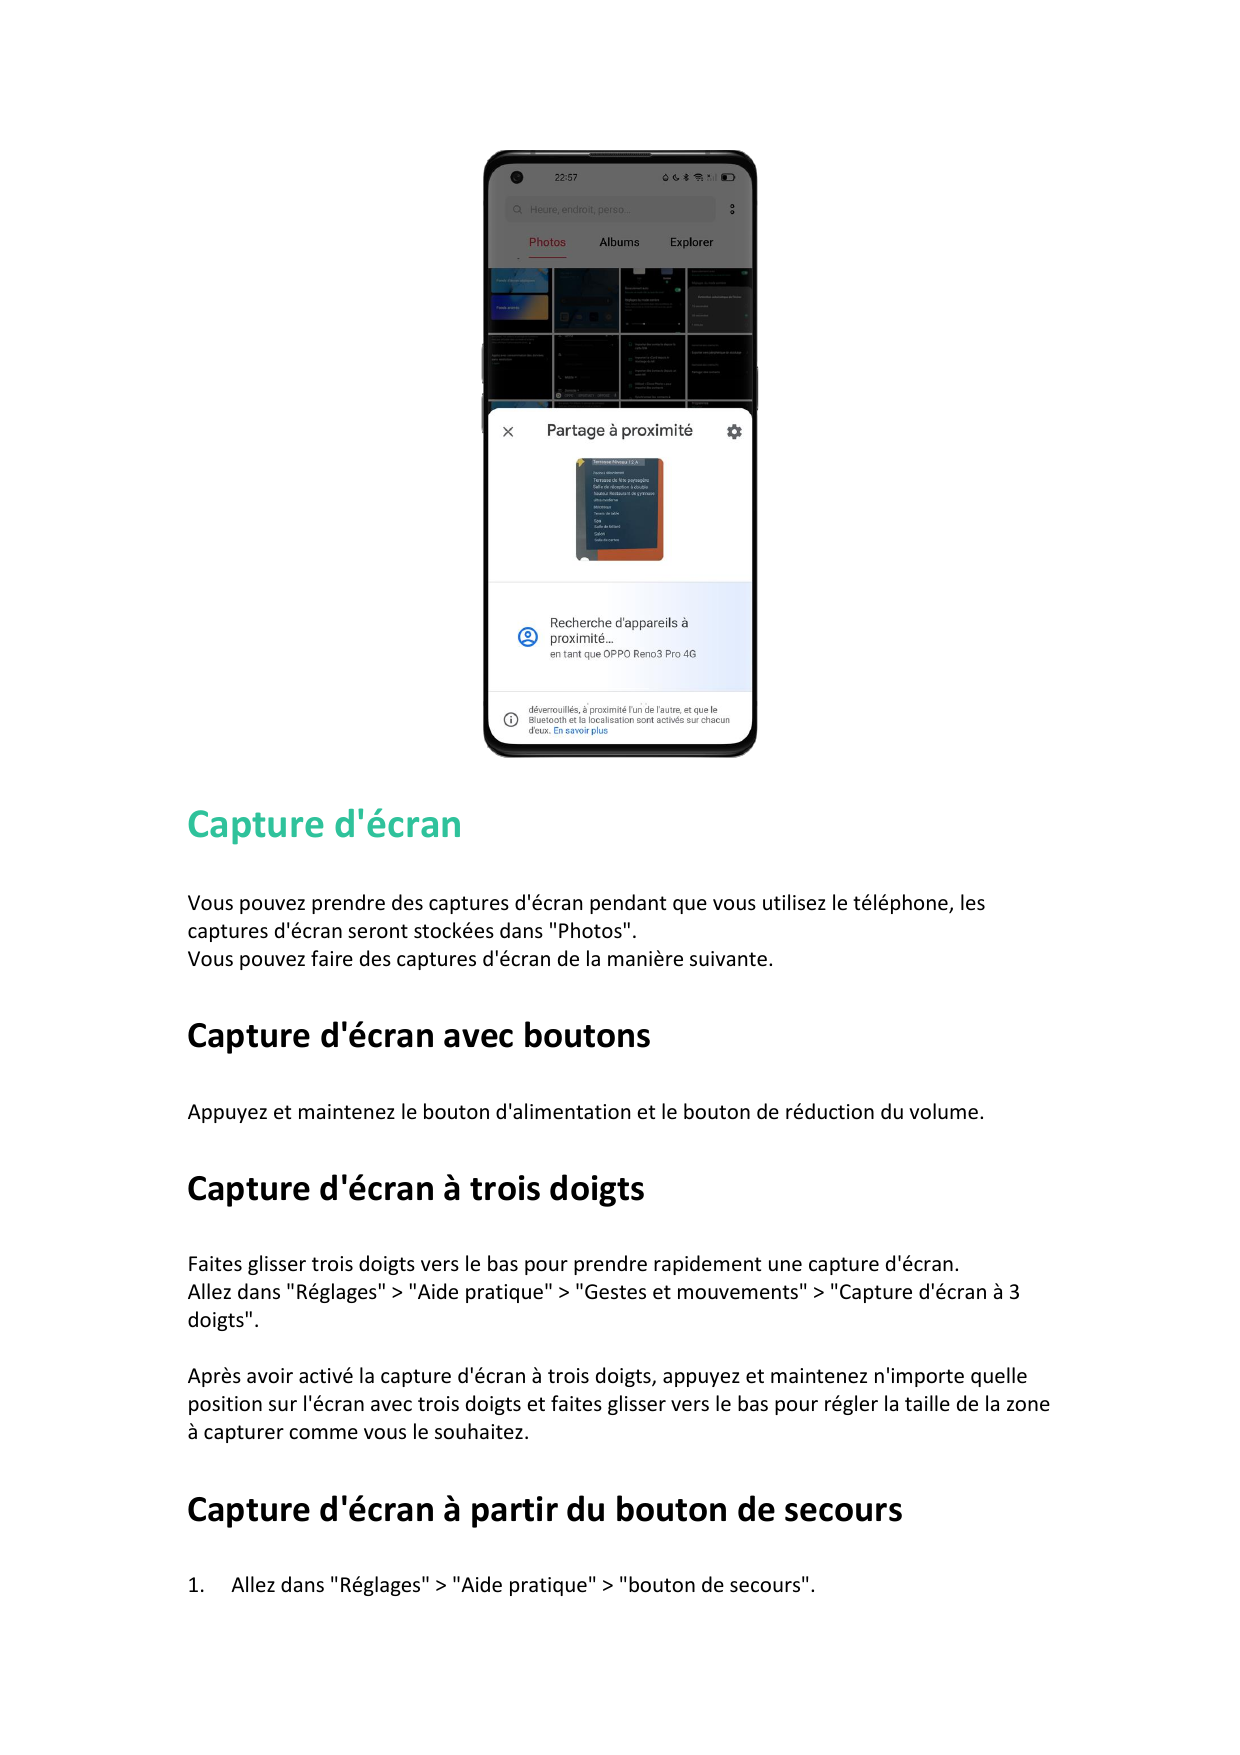 Capture d'écranVous pouvez prendre des captures d'écran pendant que vous utilisez le téléphone, lescaptures d'écran seront stock